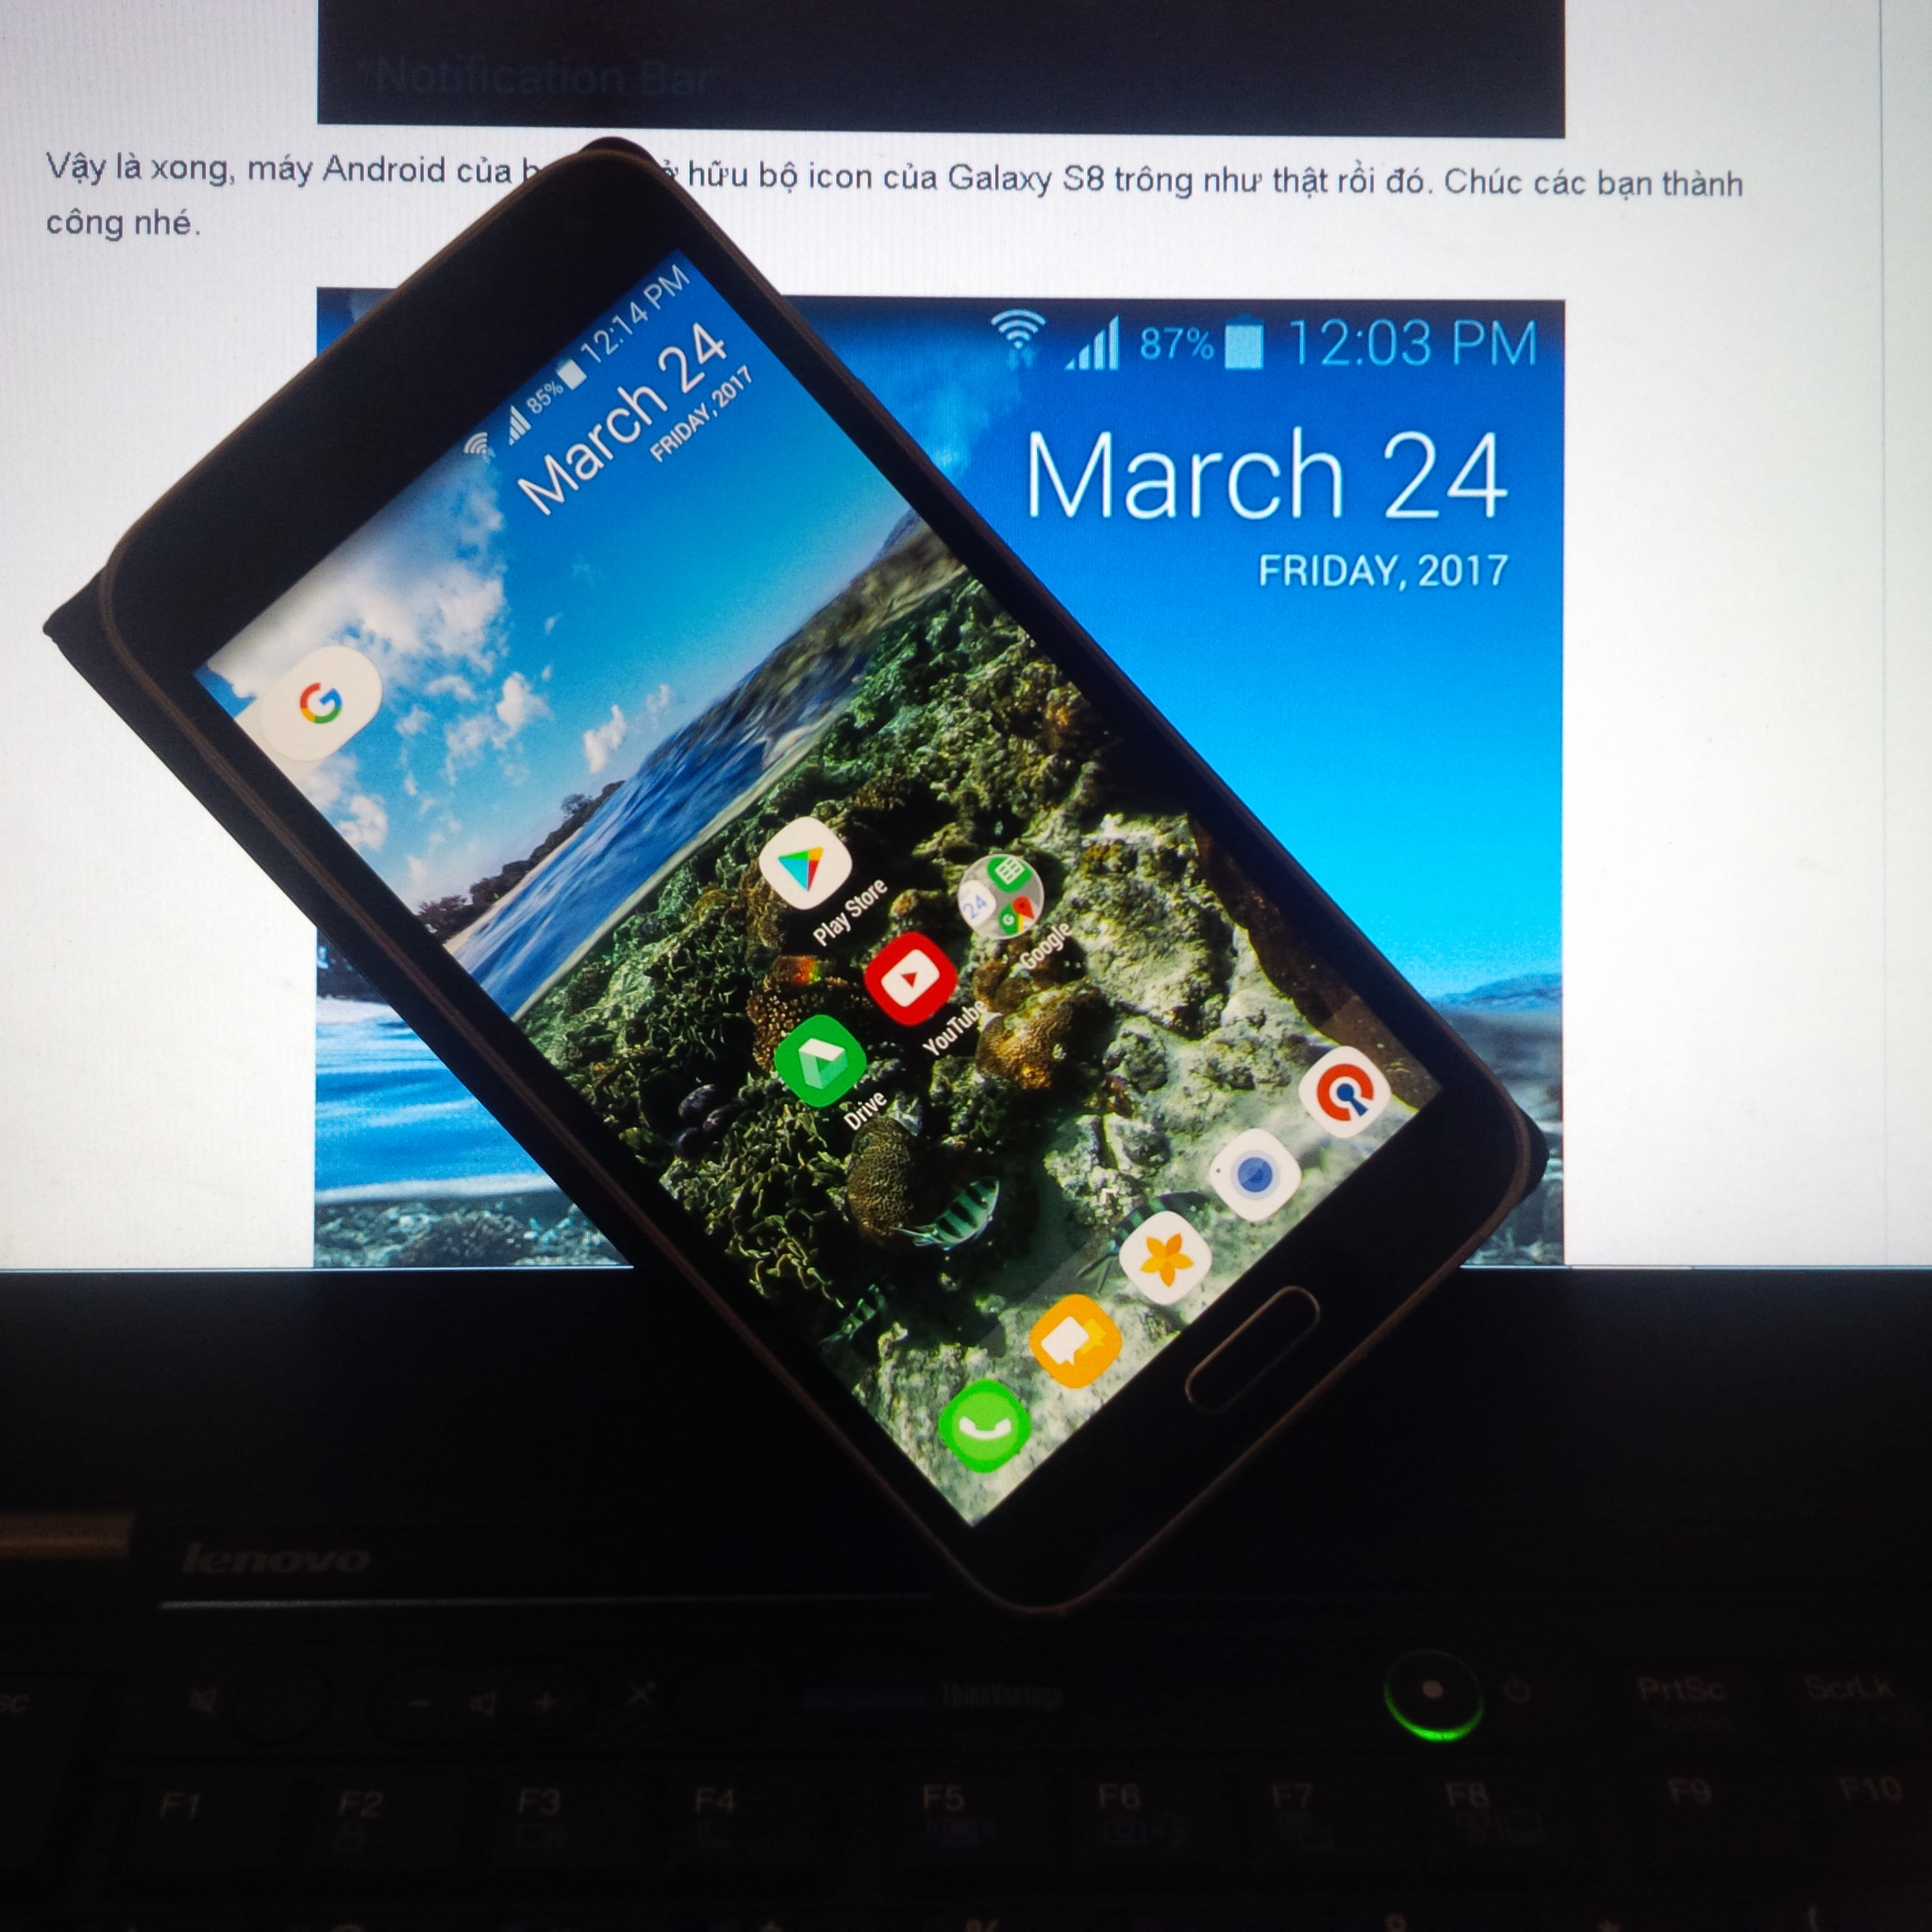 Hướng dẫn đem icon Galaxy S8 lên thiết bị Android khác